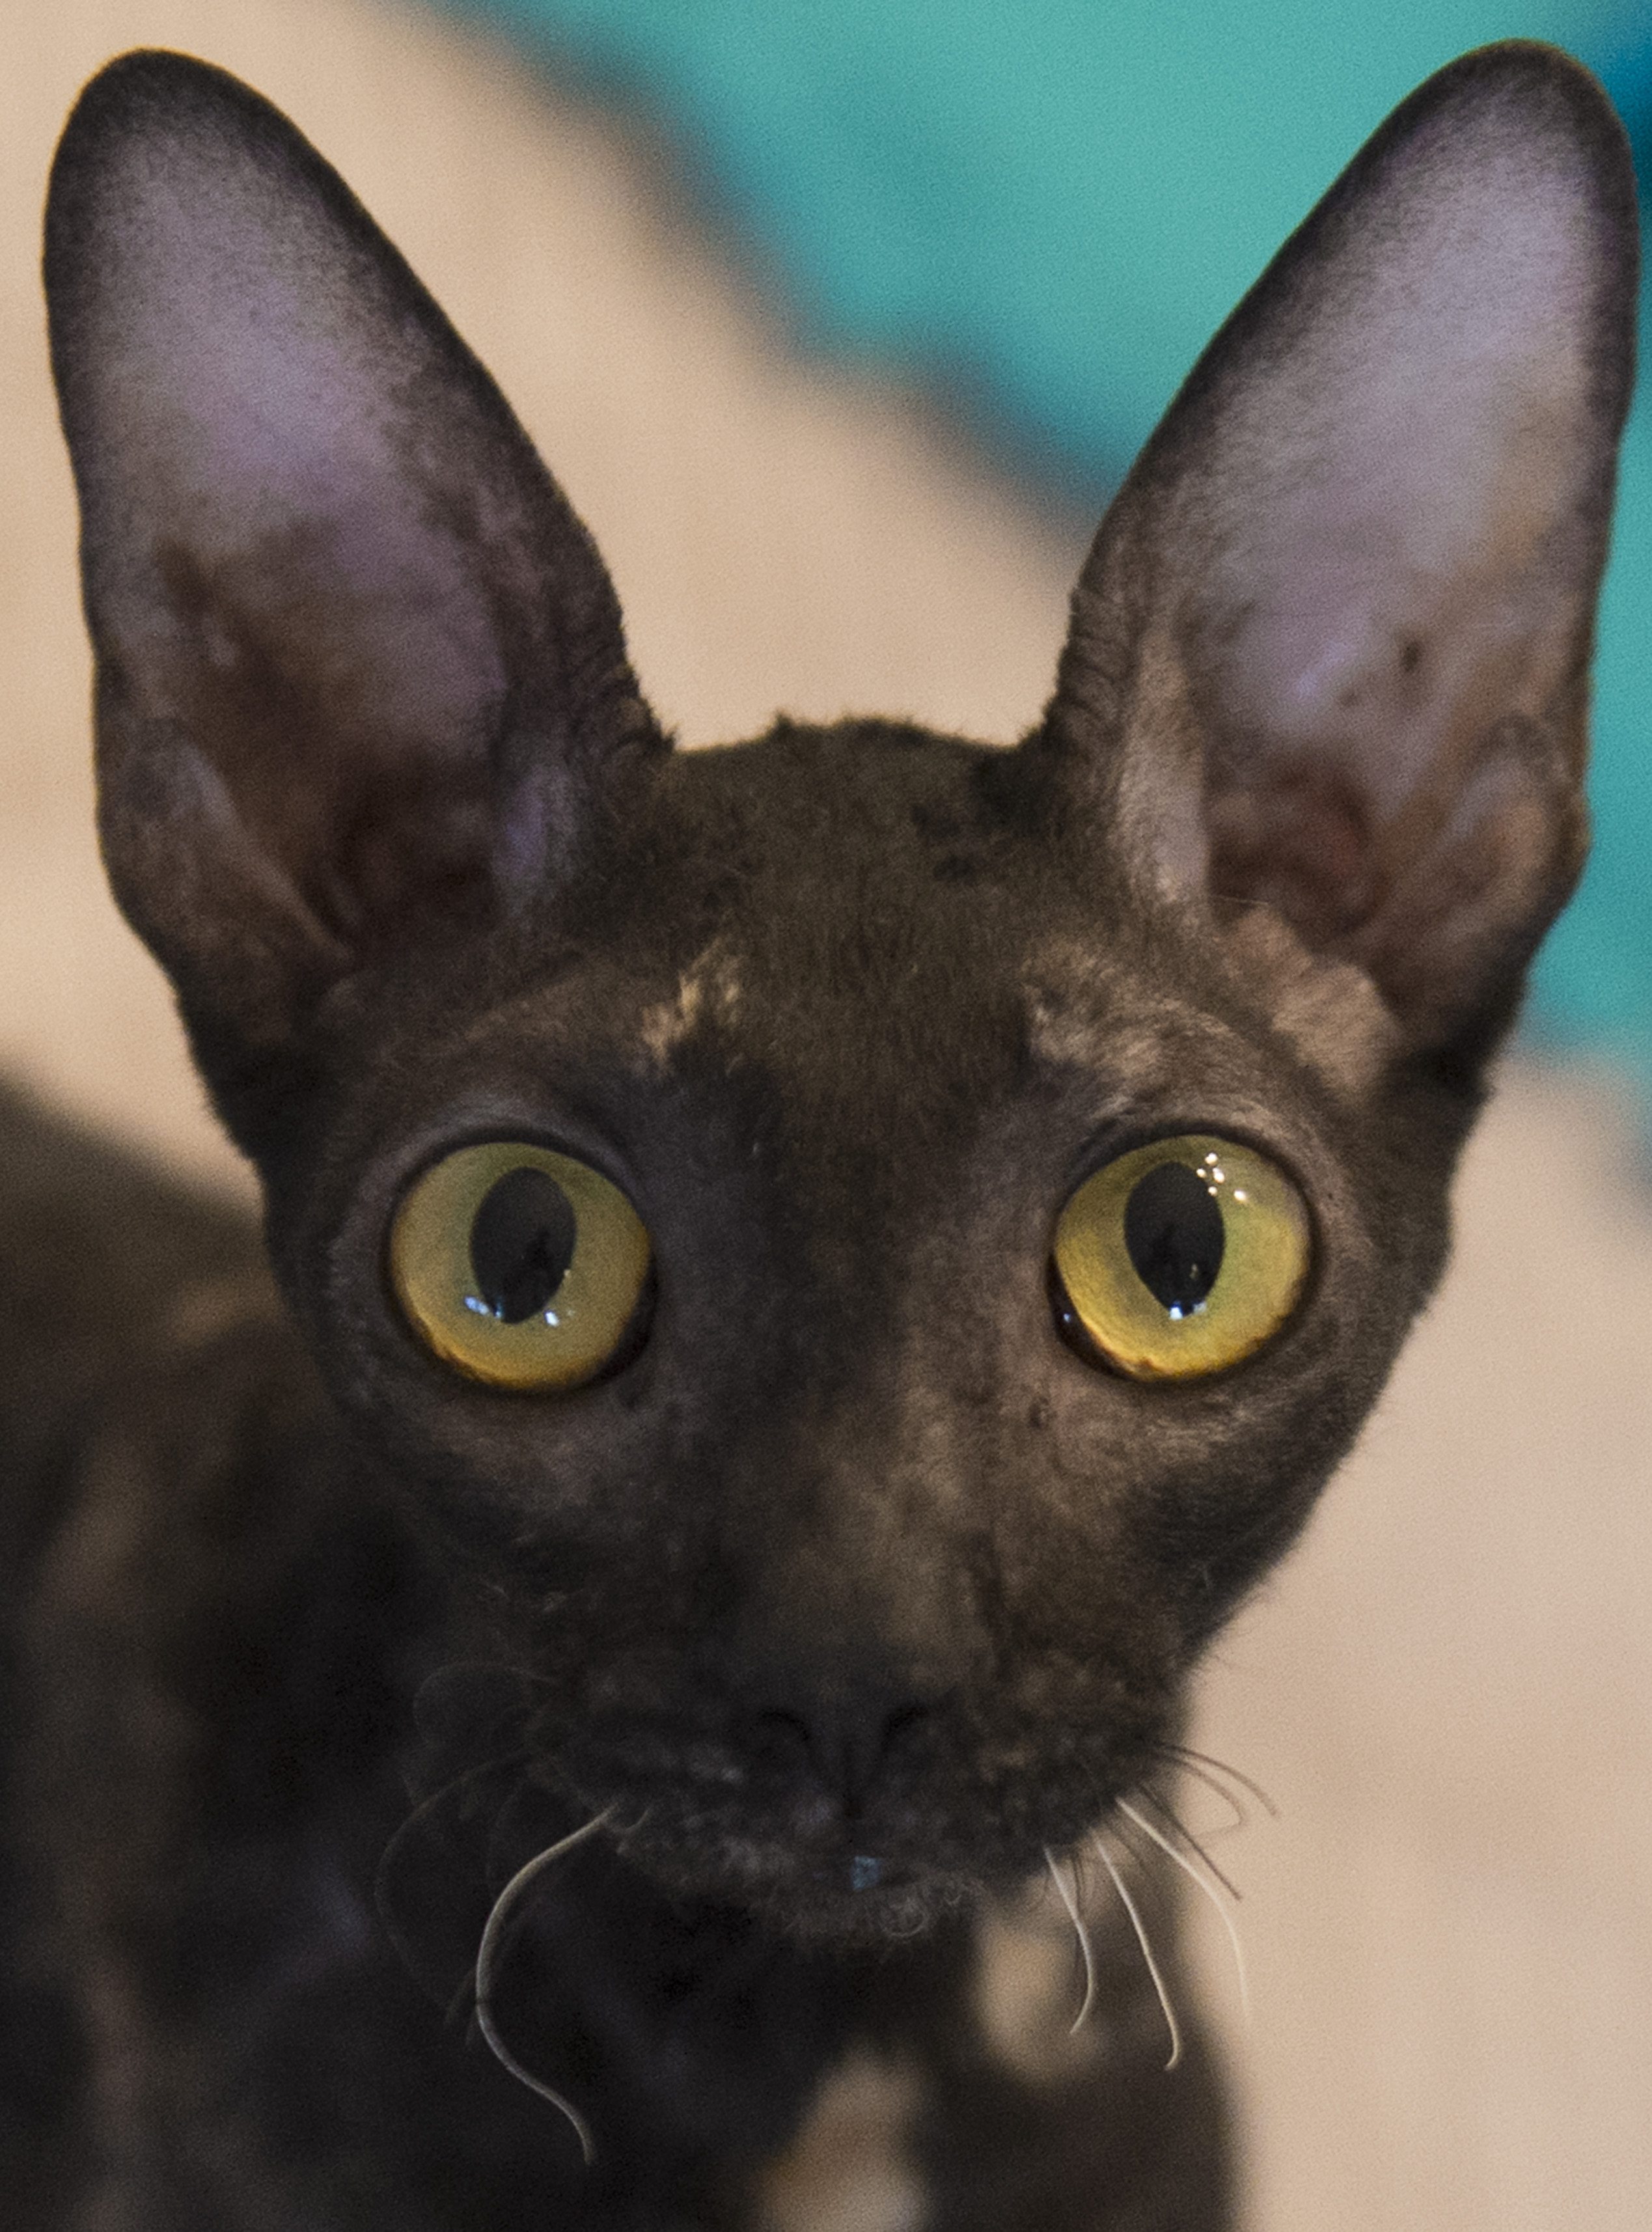 När katten hittades hade den extremt stora pupiller och fradga runt munnen (katten på bilden förekommer inte i artikeln).